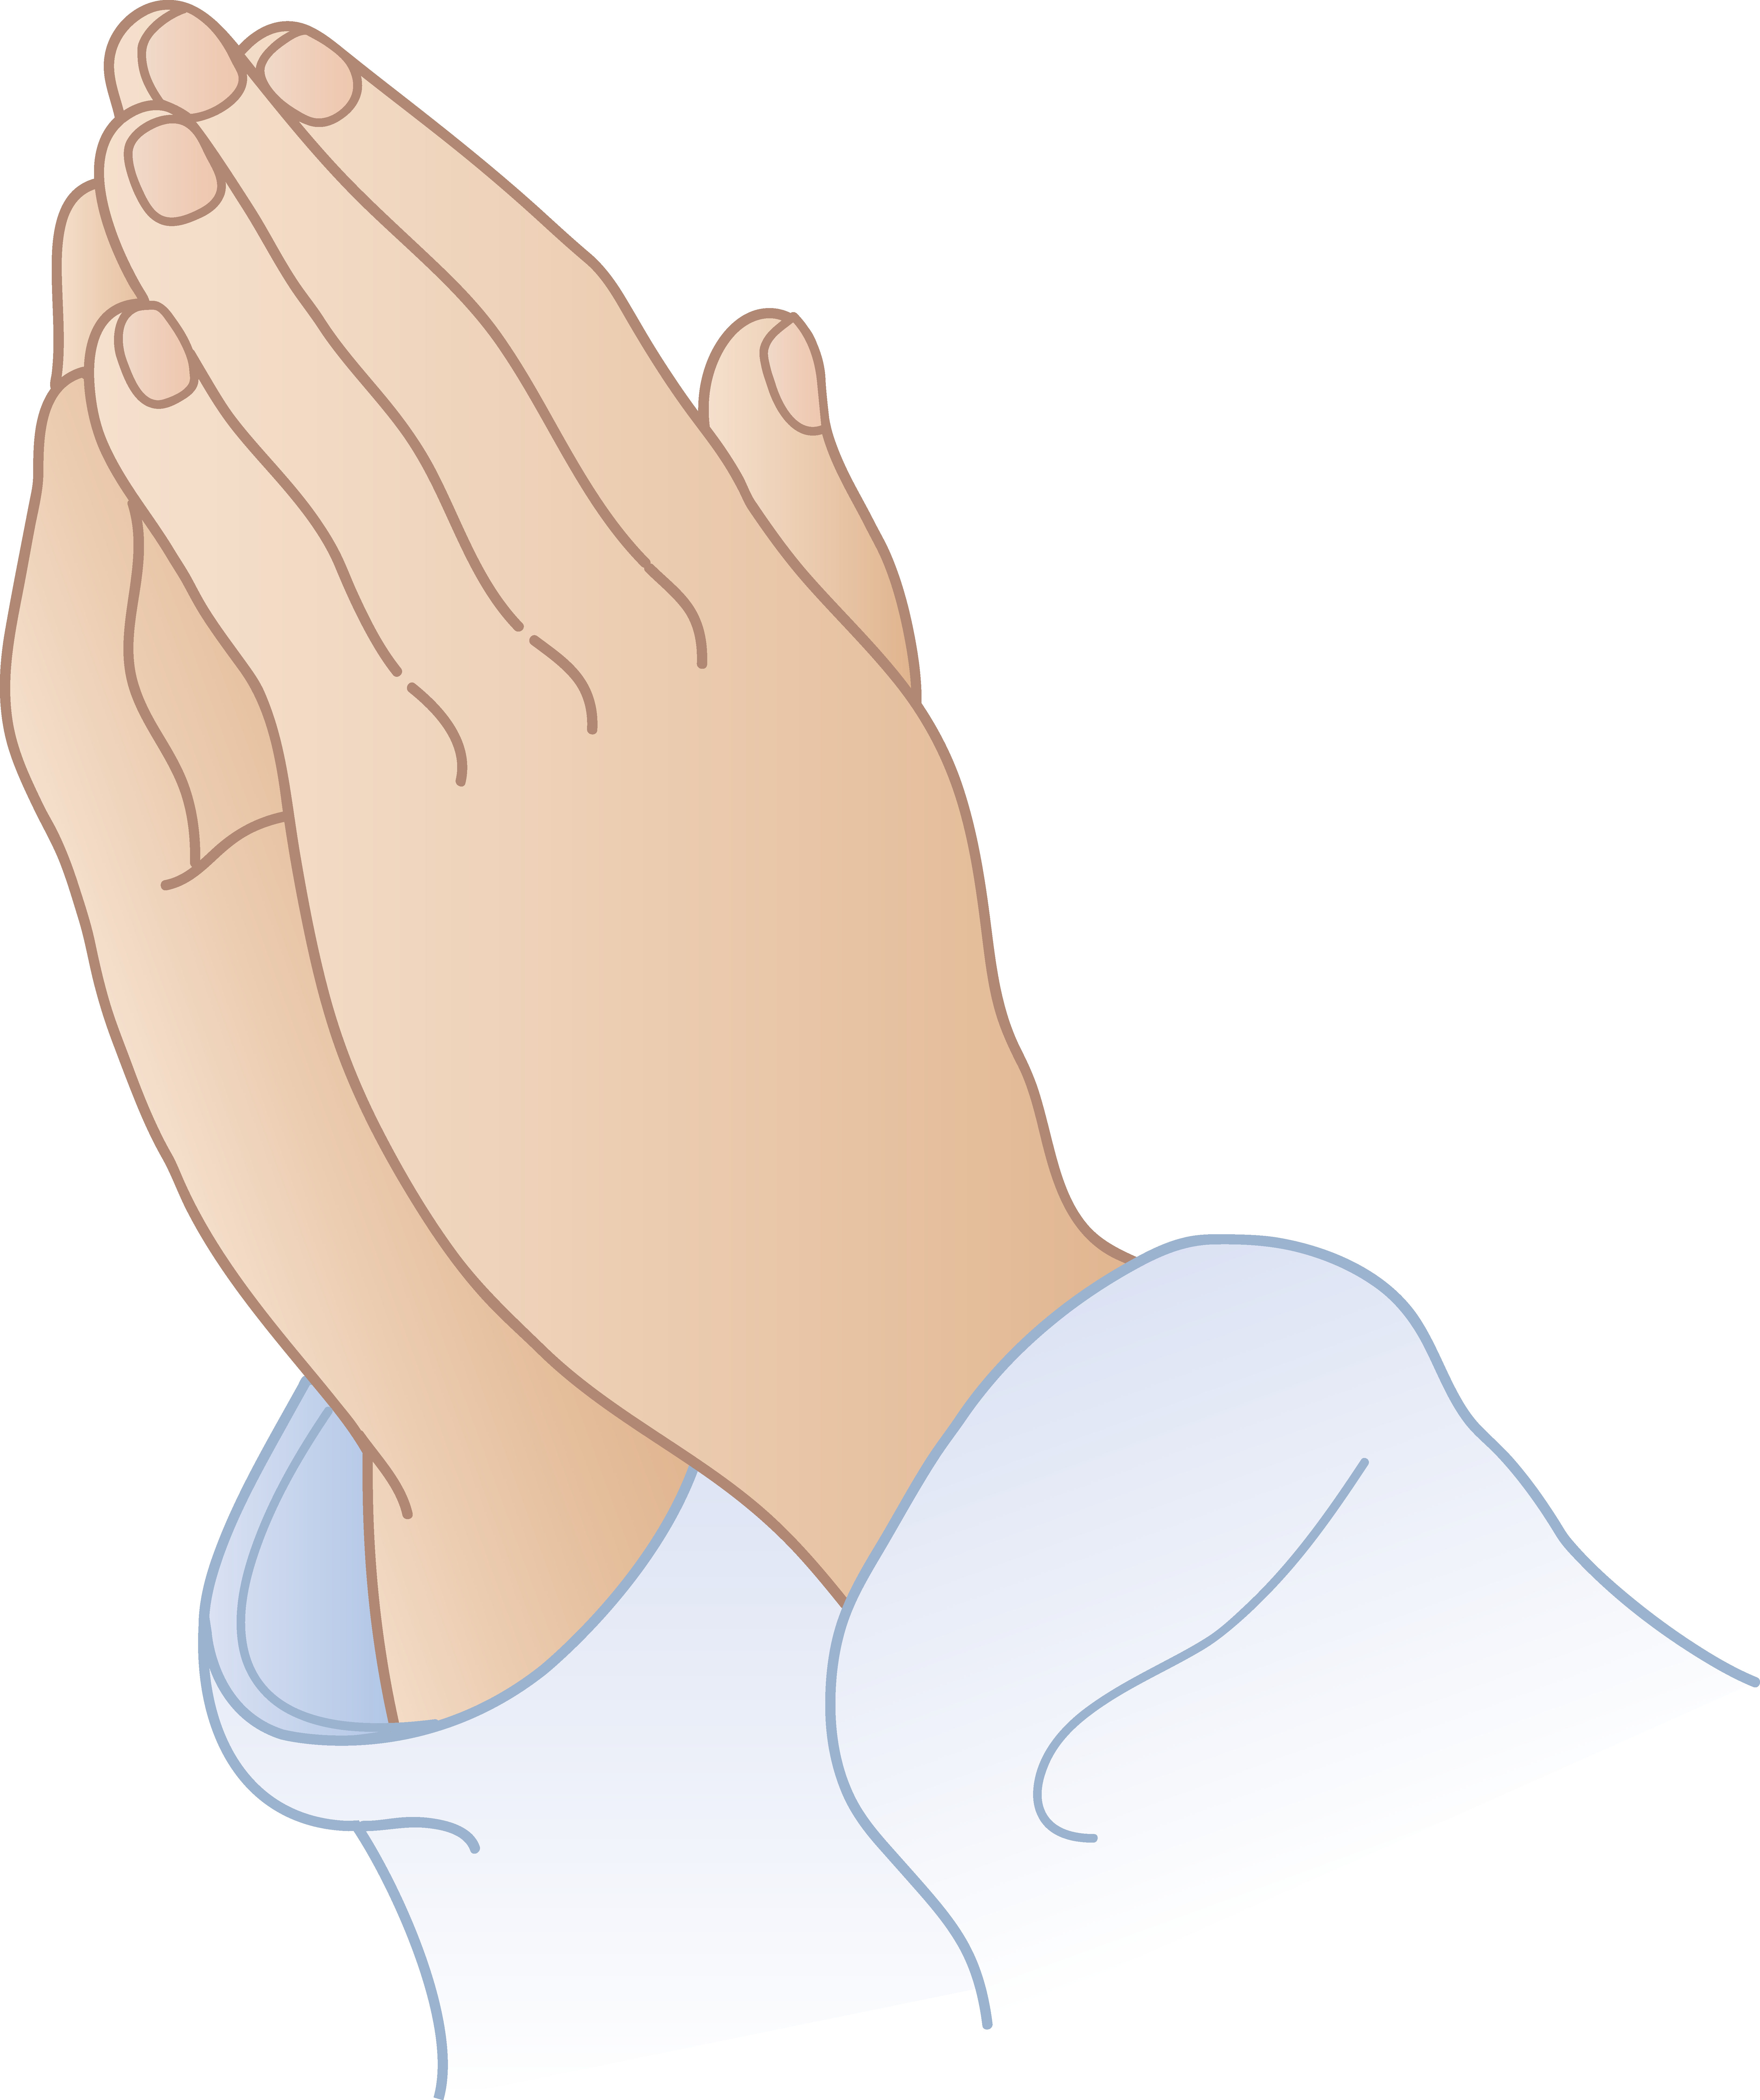 Free praying hands.